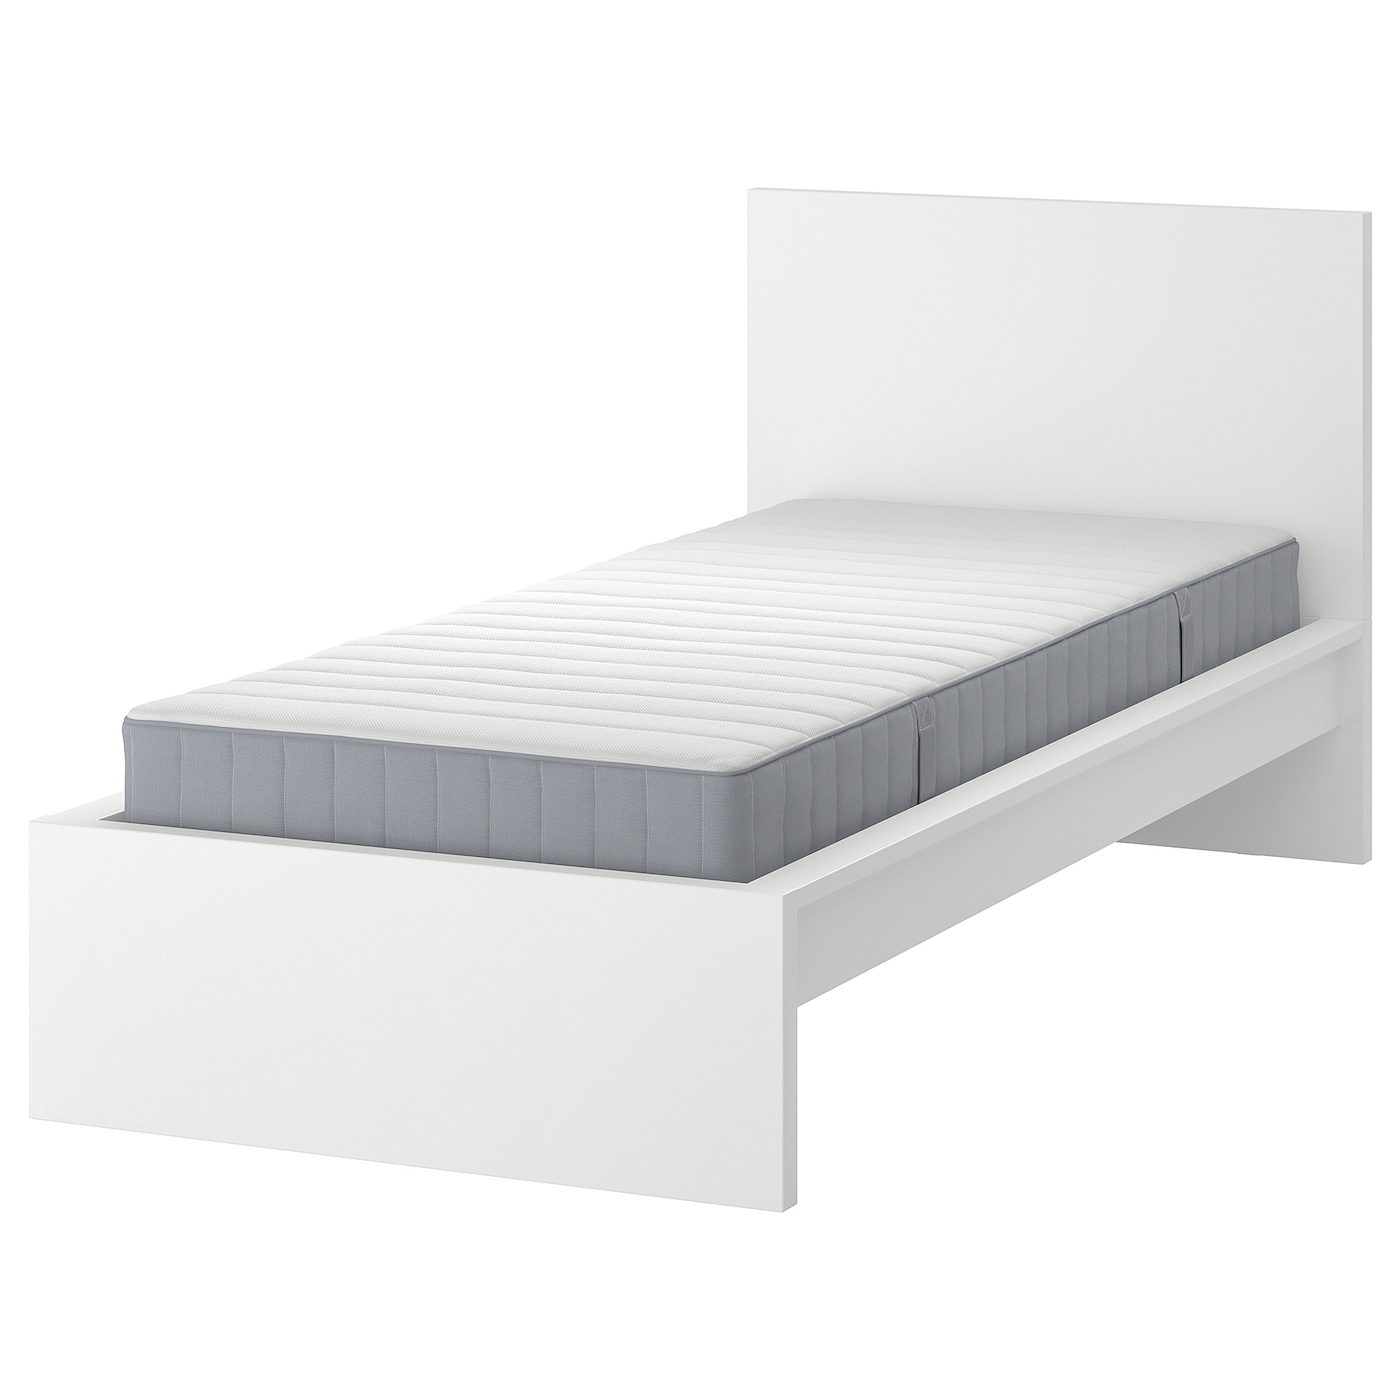 Кровать - IKEA MALM, 200х90 см, матрас средне-жесткий, белый, МАЛЬМ ИКЕА